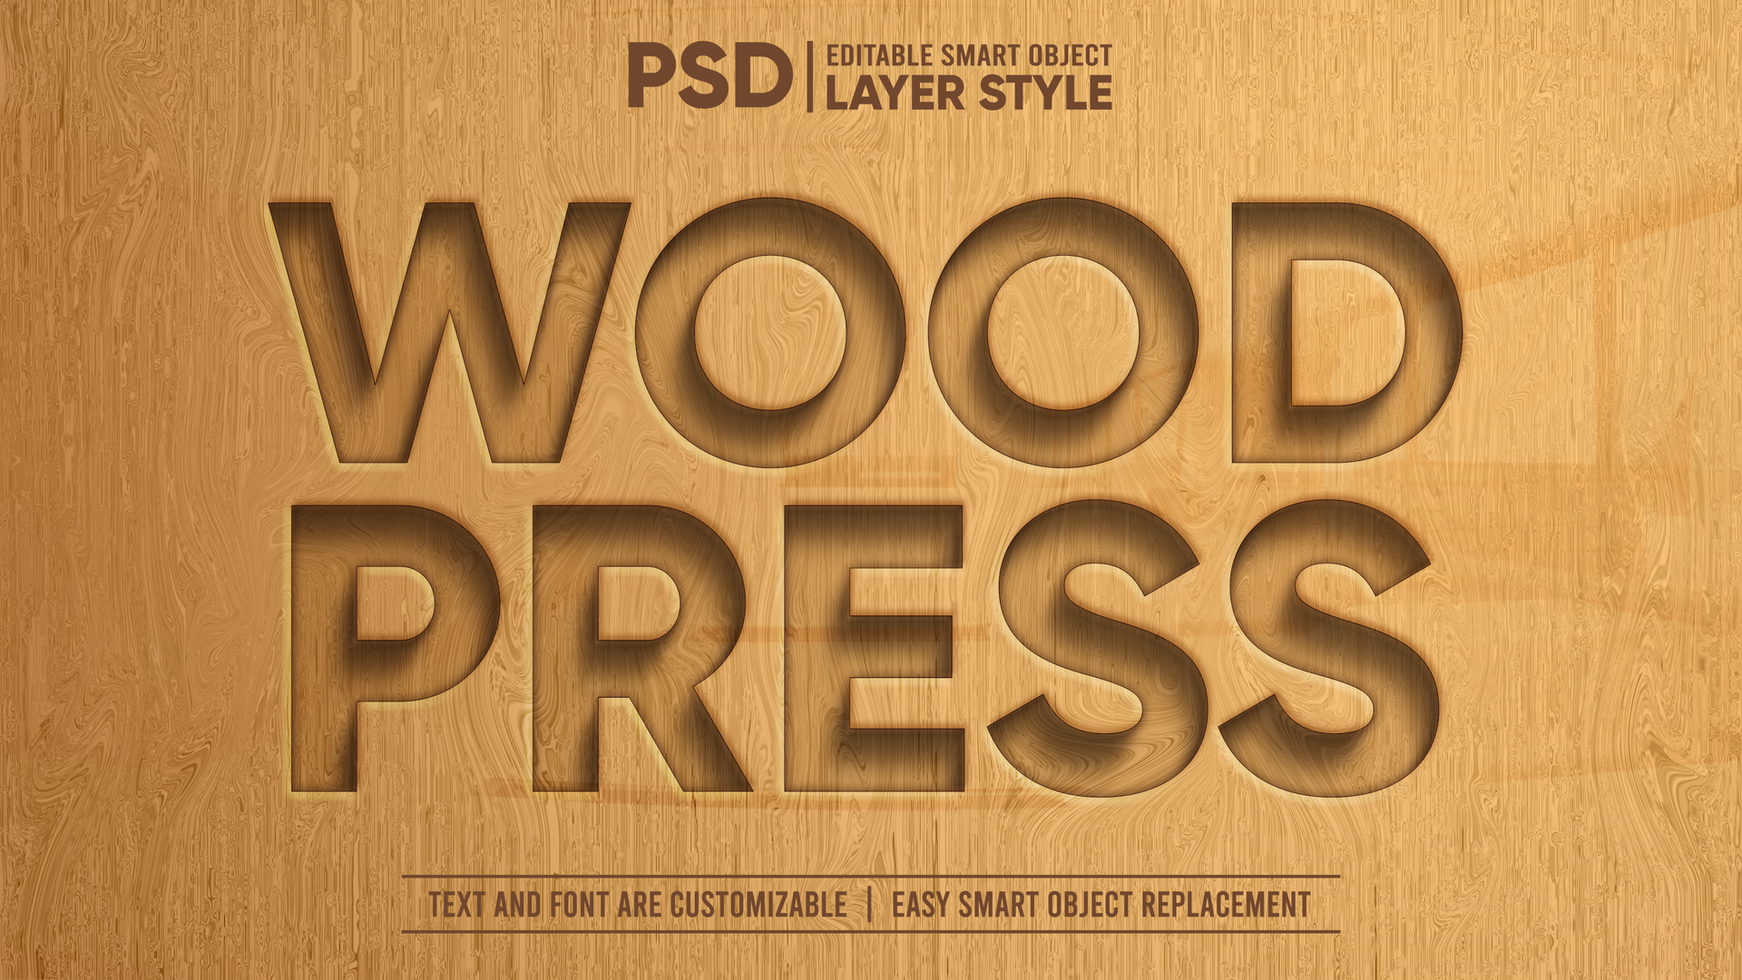 de madeira pressione esculpido realista 3d editável inteligente objeto texto efeito psd